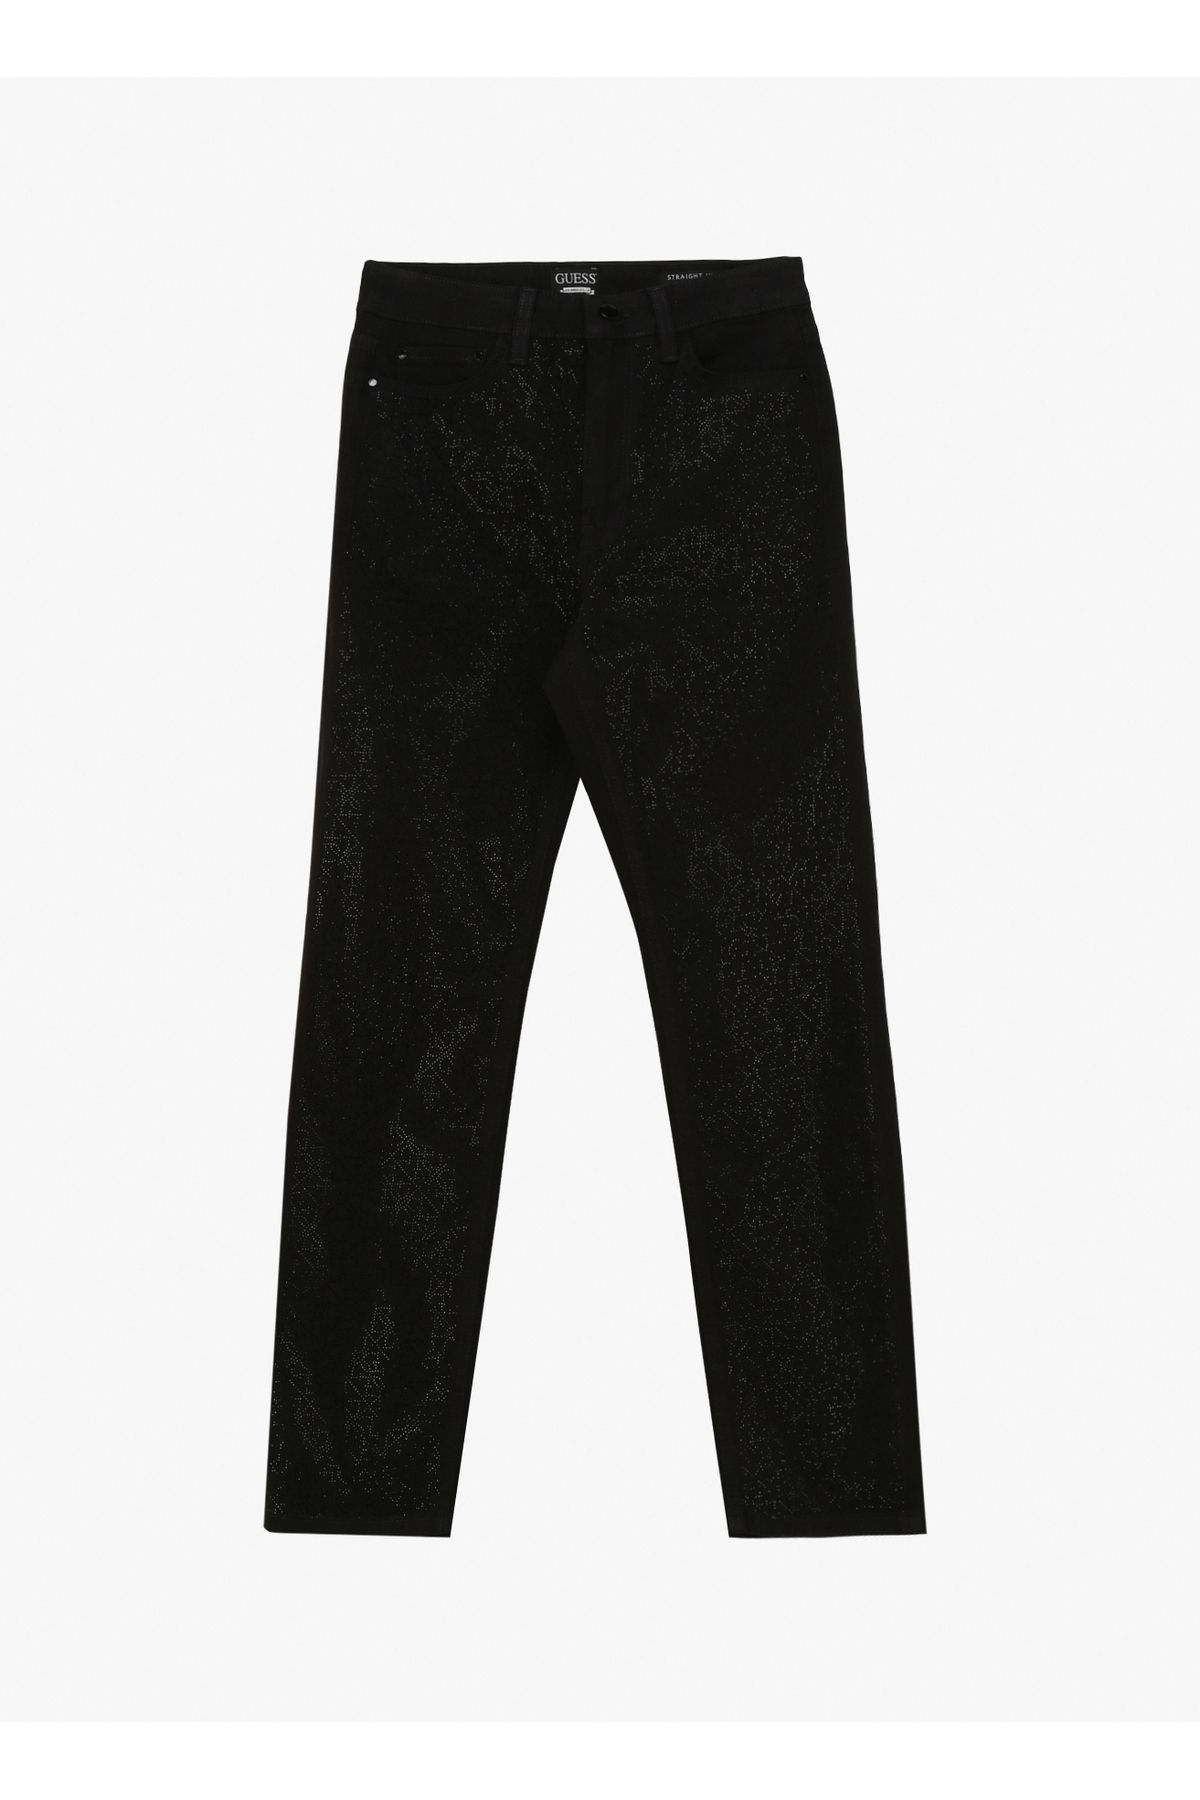 Guess Normal Bel Slim Fit Siyah Kadın Pantolon W4RA16WFXDA-JBLK